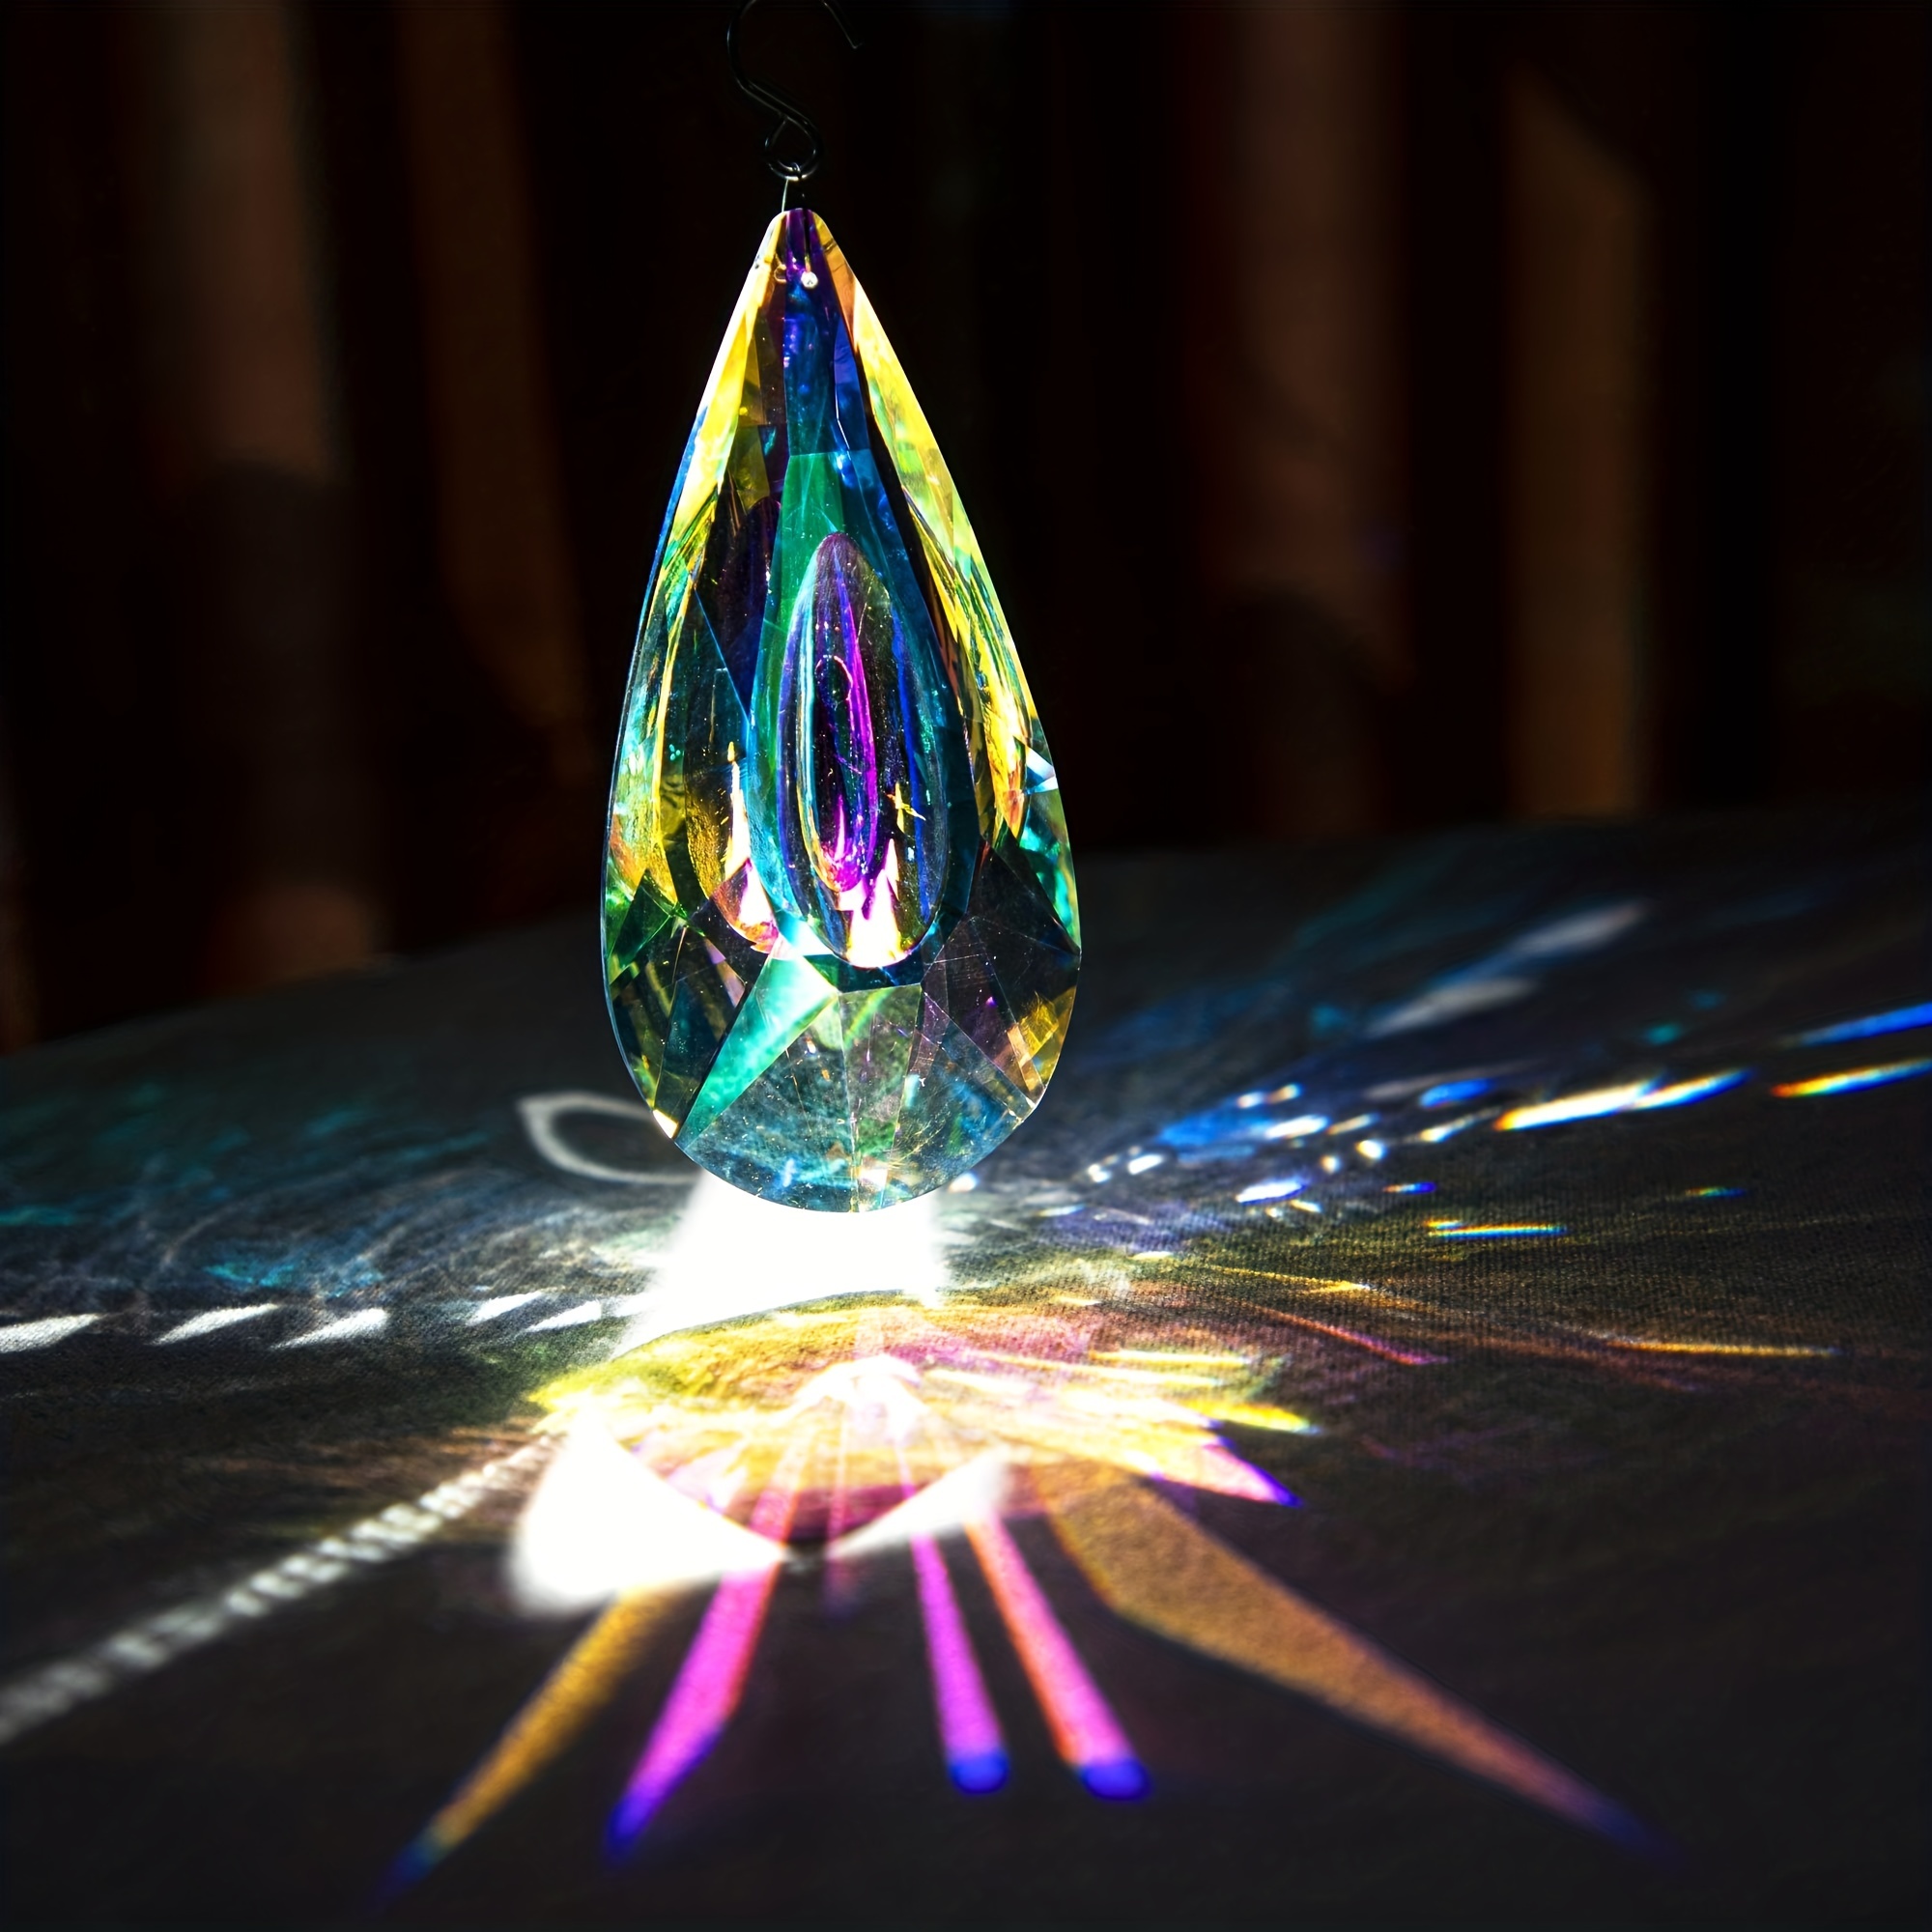 Prisme Boules à facettes cristal suspension attrape soleil